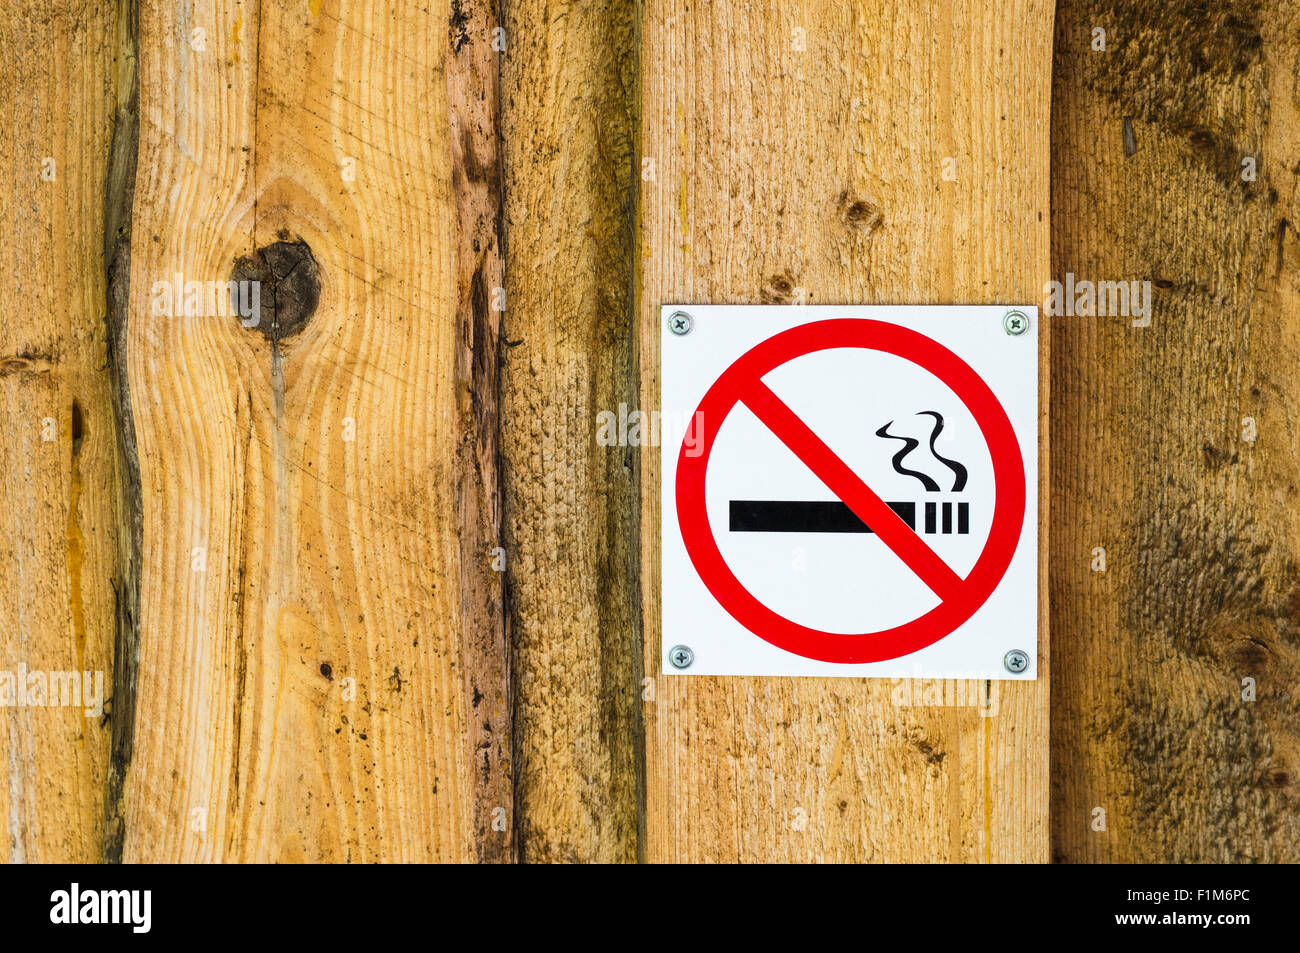 Aucun signe de fumer sur l'ancien mur en bois Banque D'Images